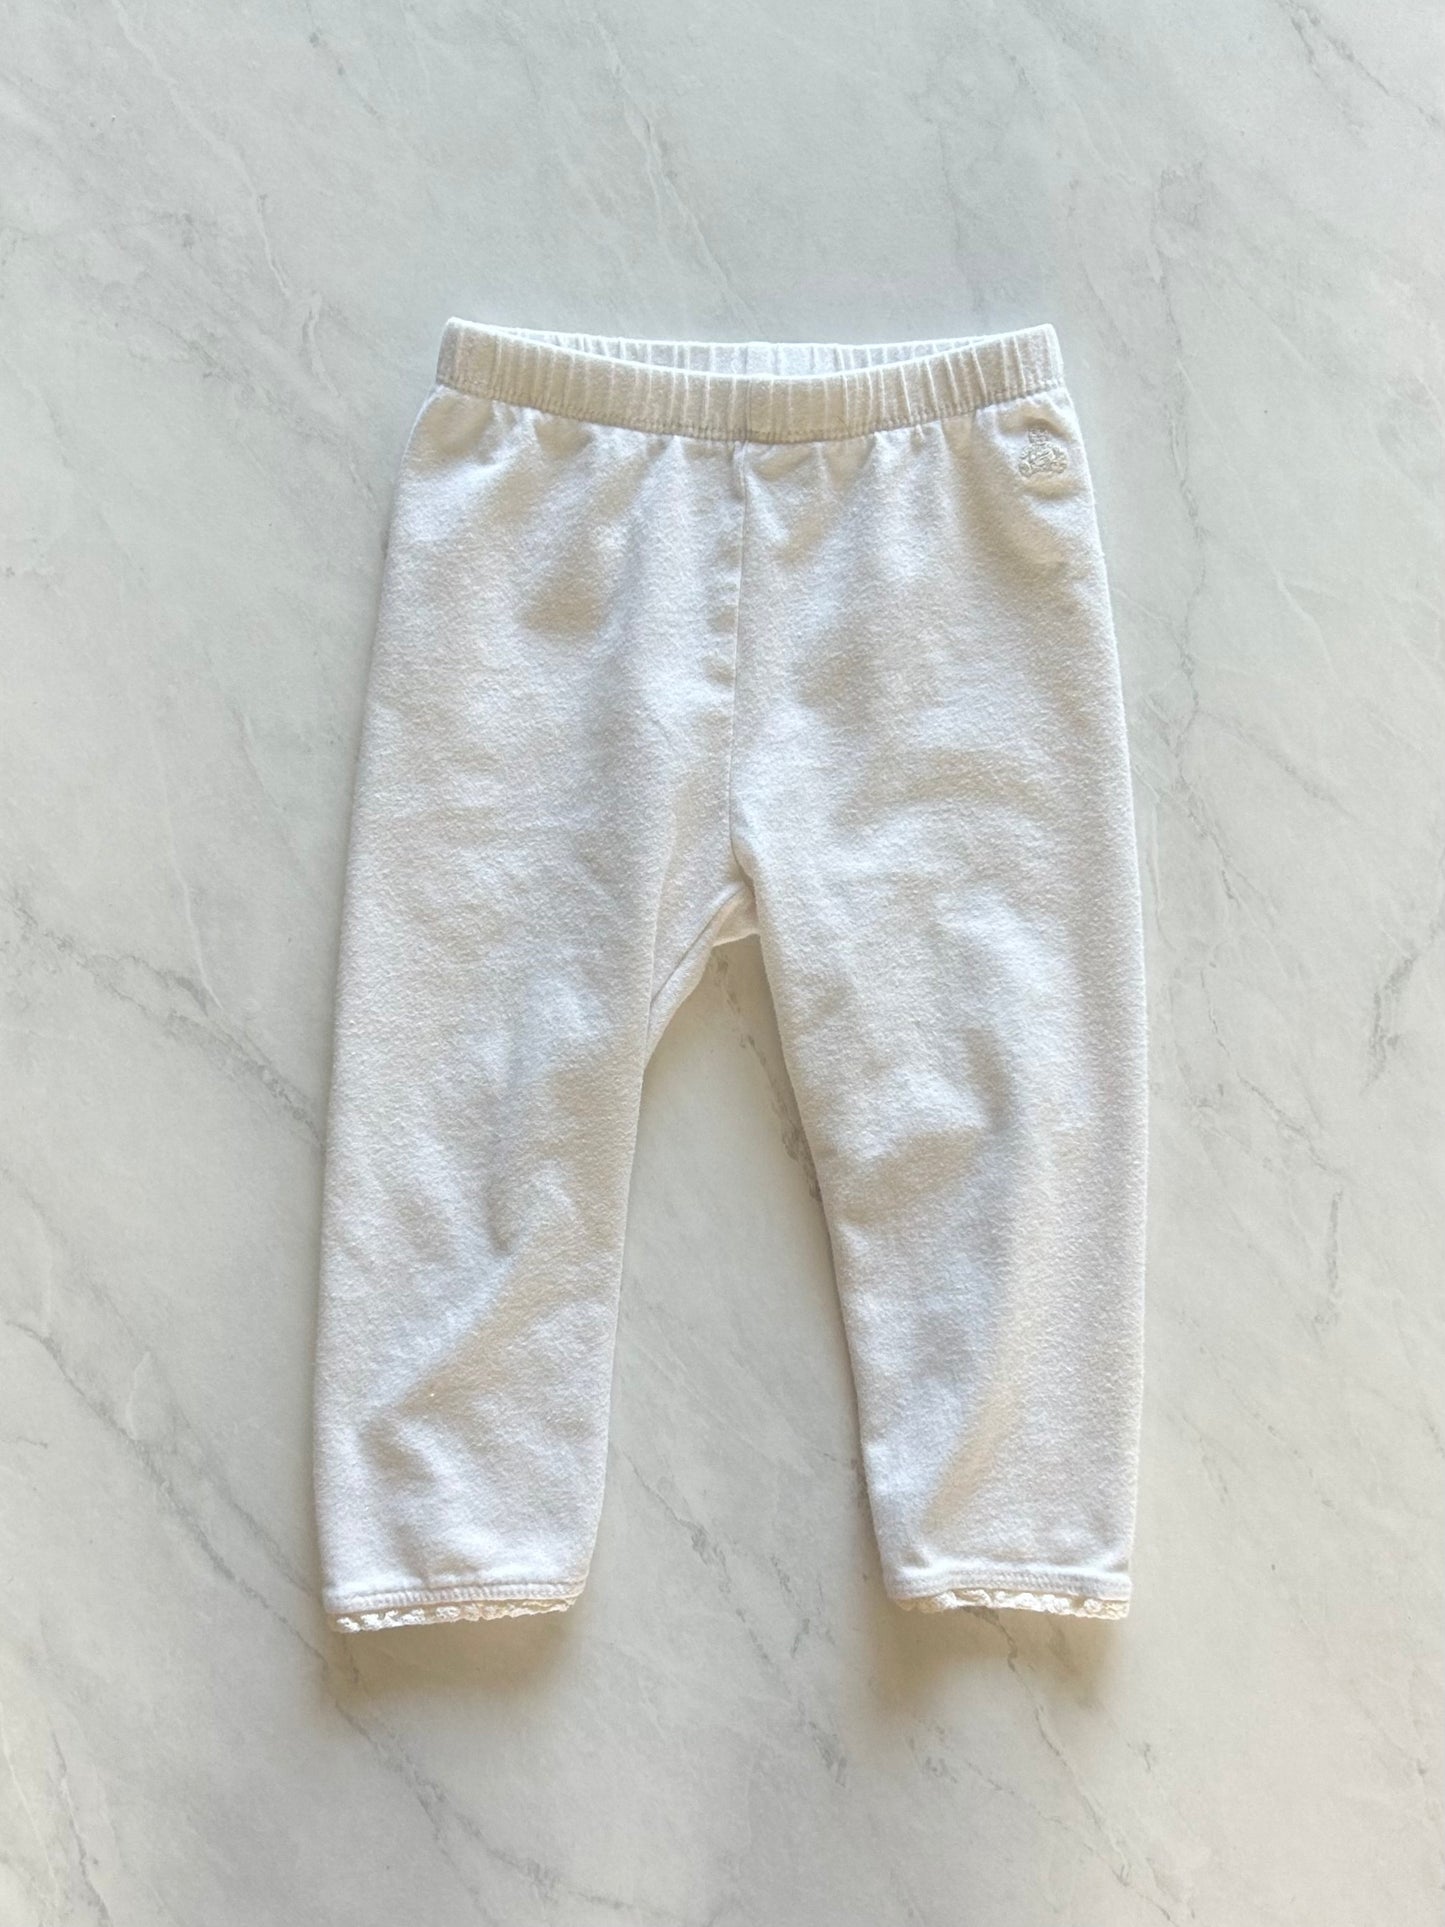 Pantalon - Baby Gap - 12-18 mois